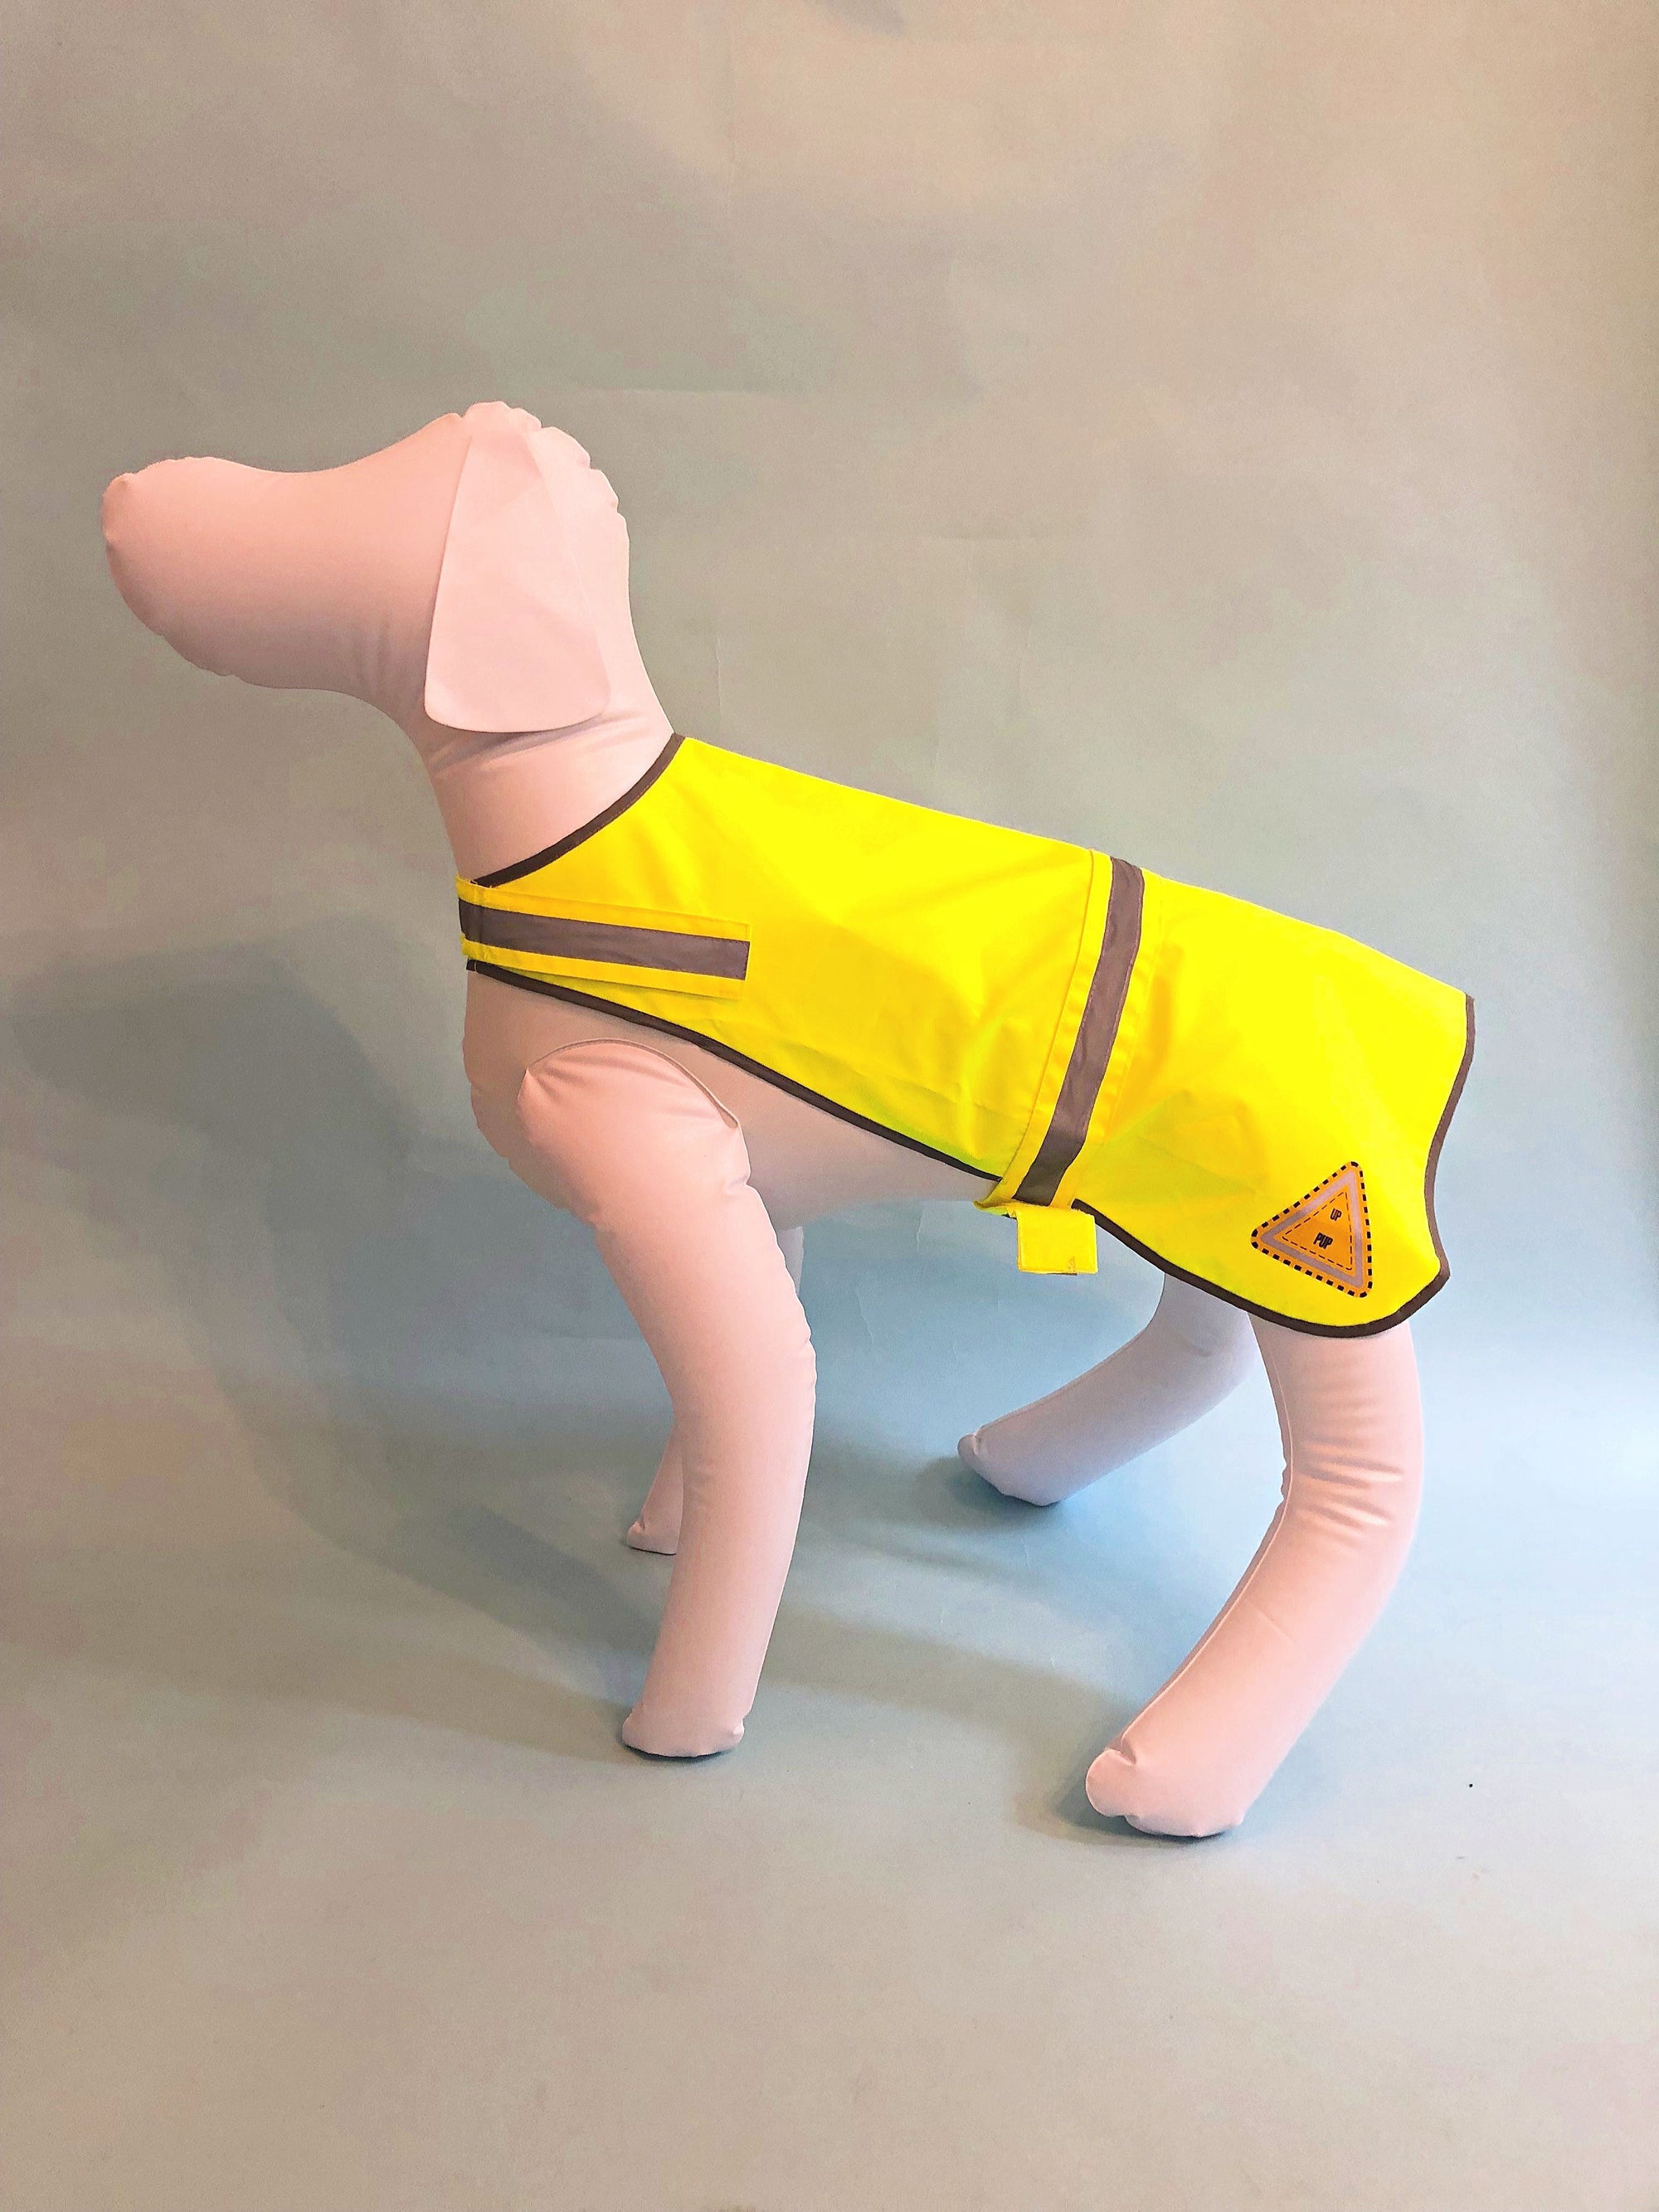 Dog Safety Vest (High Visibility) - UHV900 Utility Pro - Utility Pro Wear